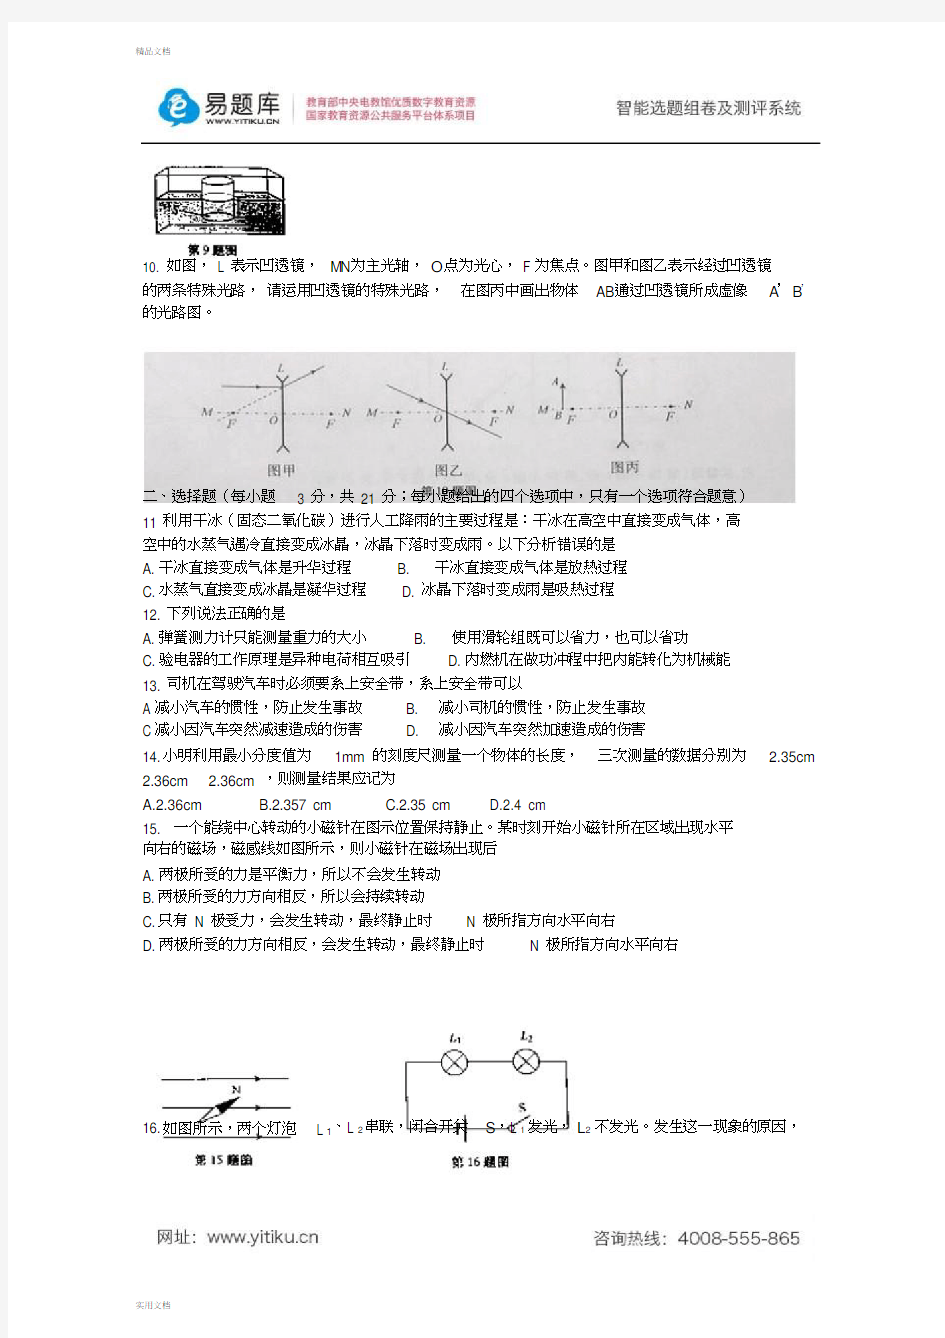 2015年安徽省初三中考真题物理试卷